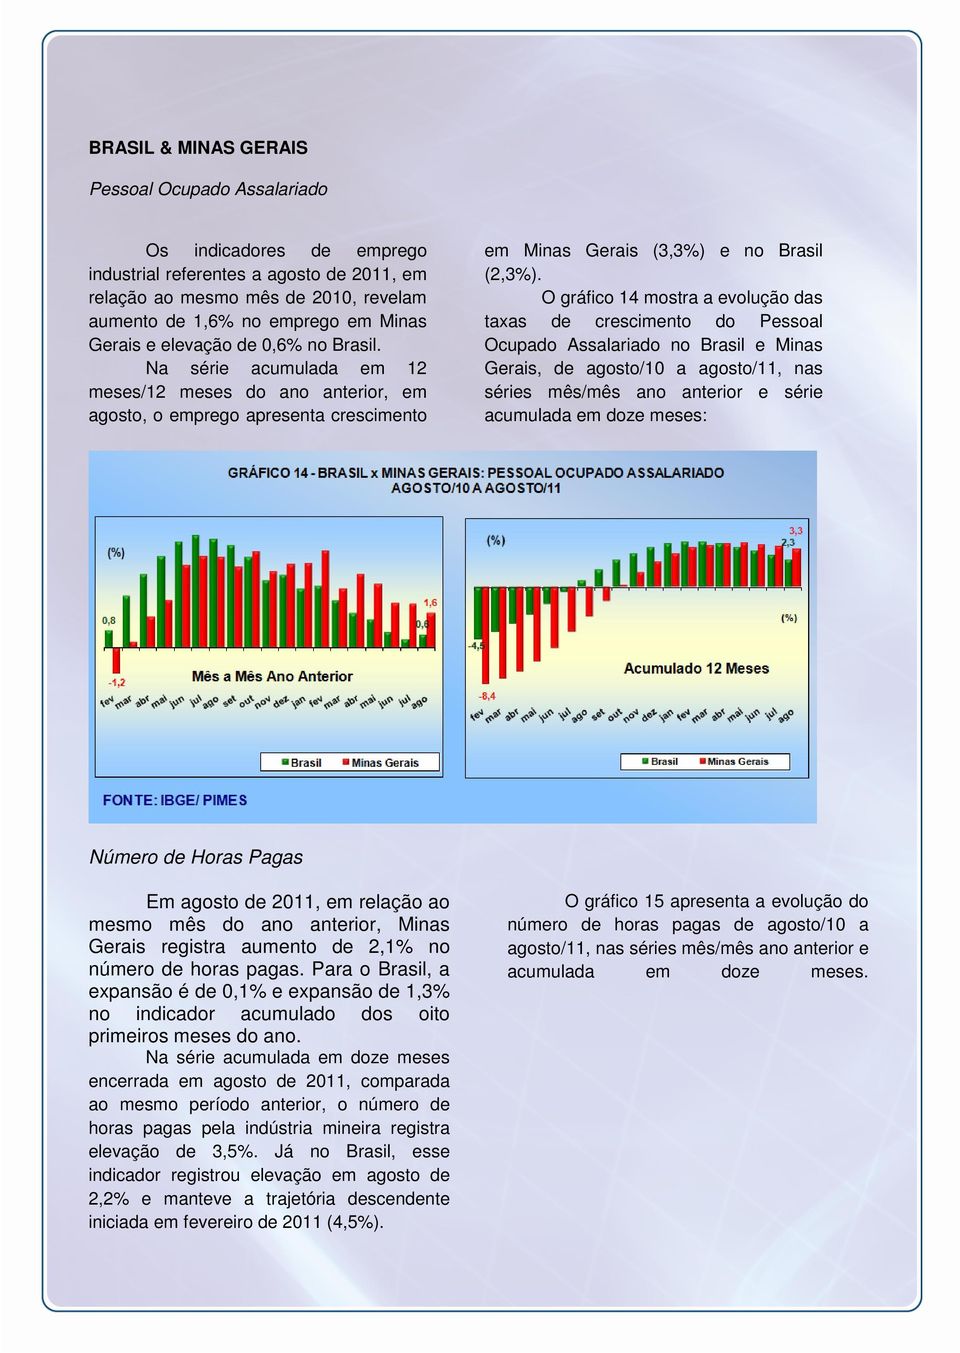 O gráfico 14 mostra a evolução das taxas de crescimento do Pessoal Ocupado Assalariado no Brasil e Minas Gerais, de agosto/10 a agosto/11, nas séries mês/mês ano anterior e série acumulada em doze